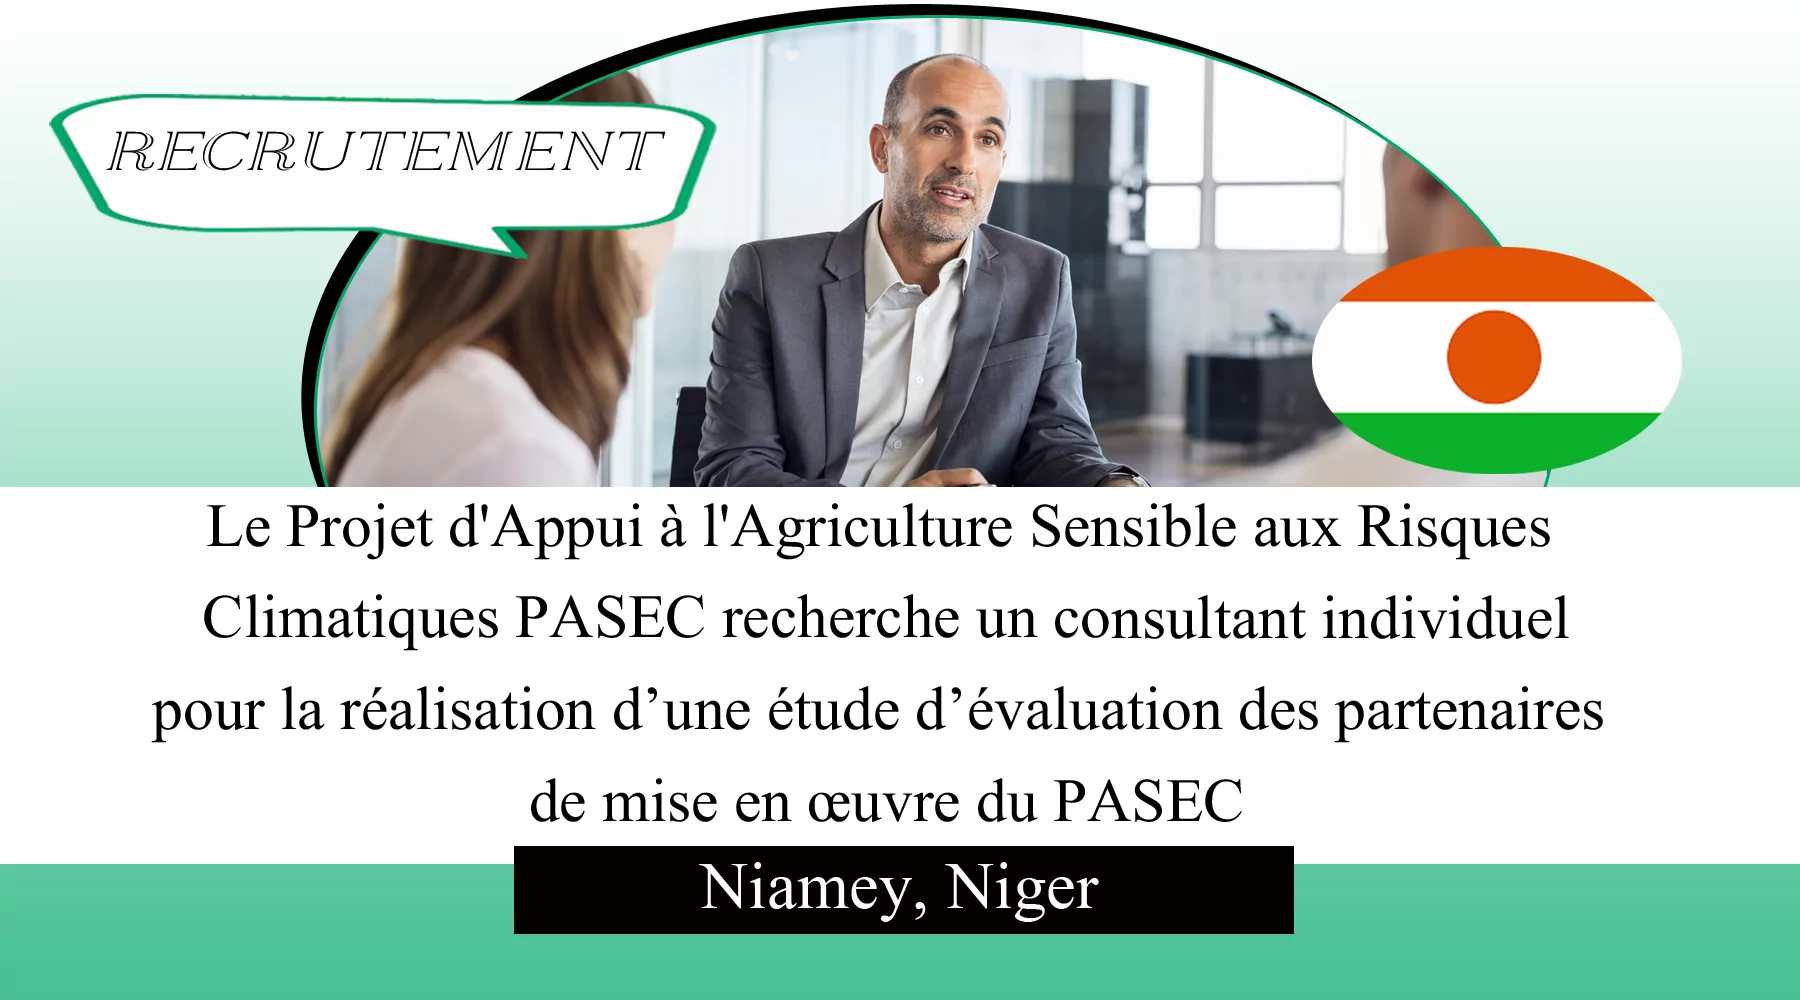 Le Projet d’Appui à l’Agriculture Sensible aux Risques Climatiques PASEC recherche un consultant individuel pour la réalisation d’une étude d’évaluation des partenaires de mise en œuvre du PASEC, Niamey, Niger